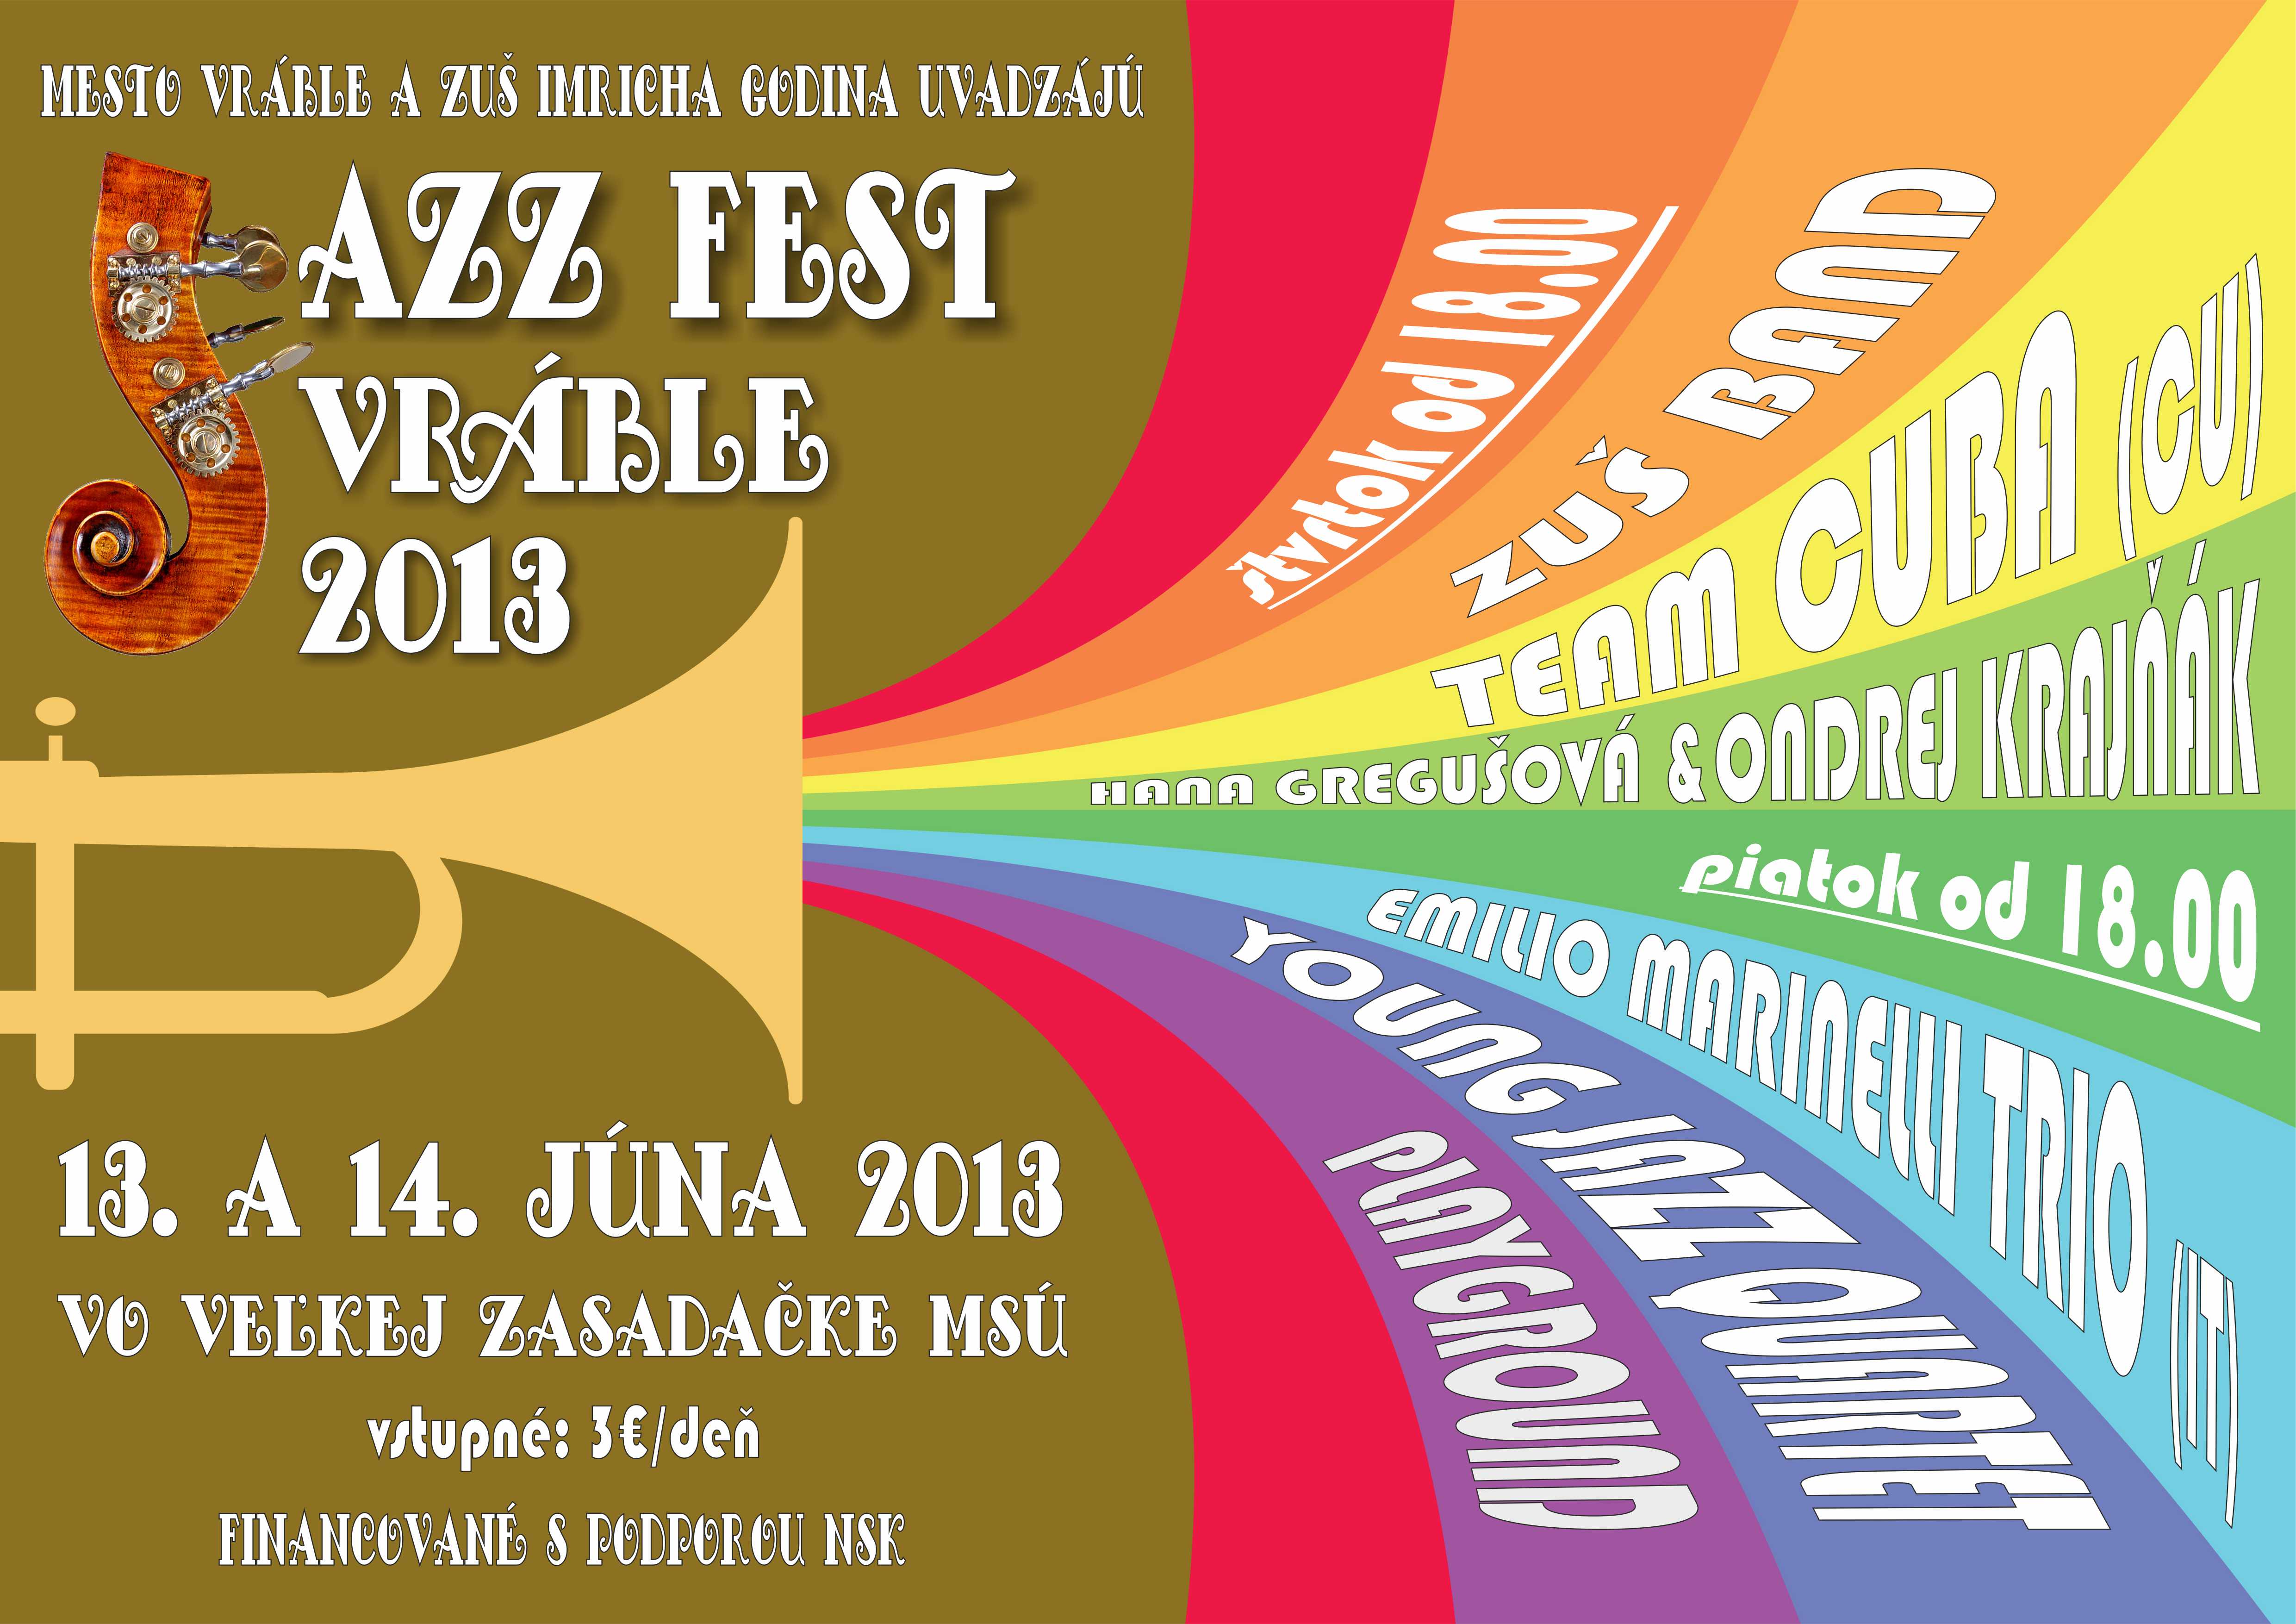 Jazz Fest Vrble 2013